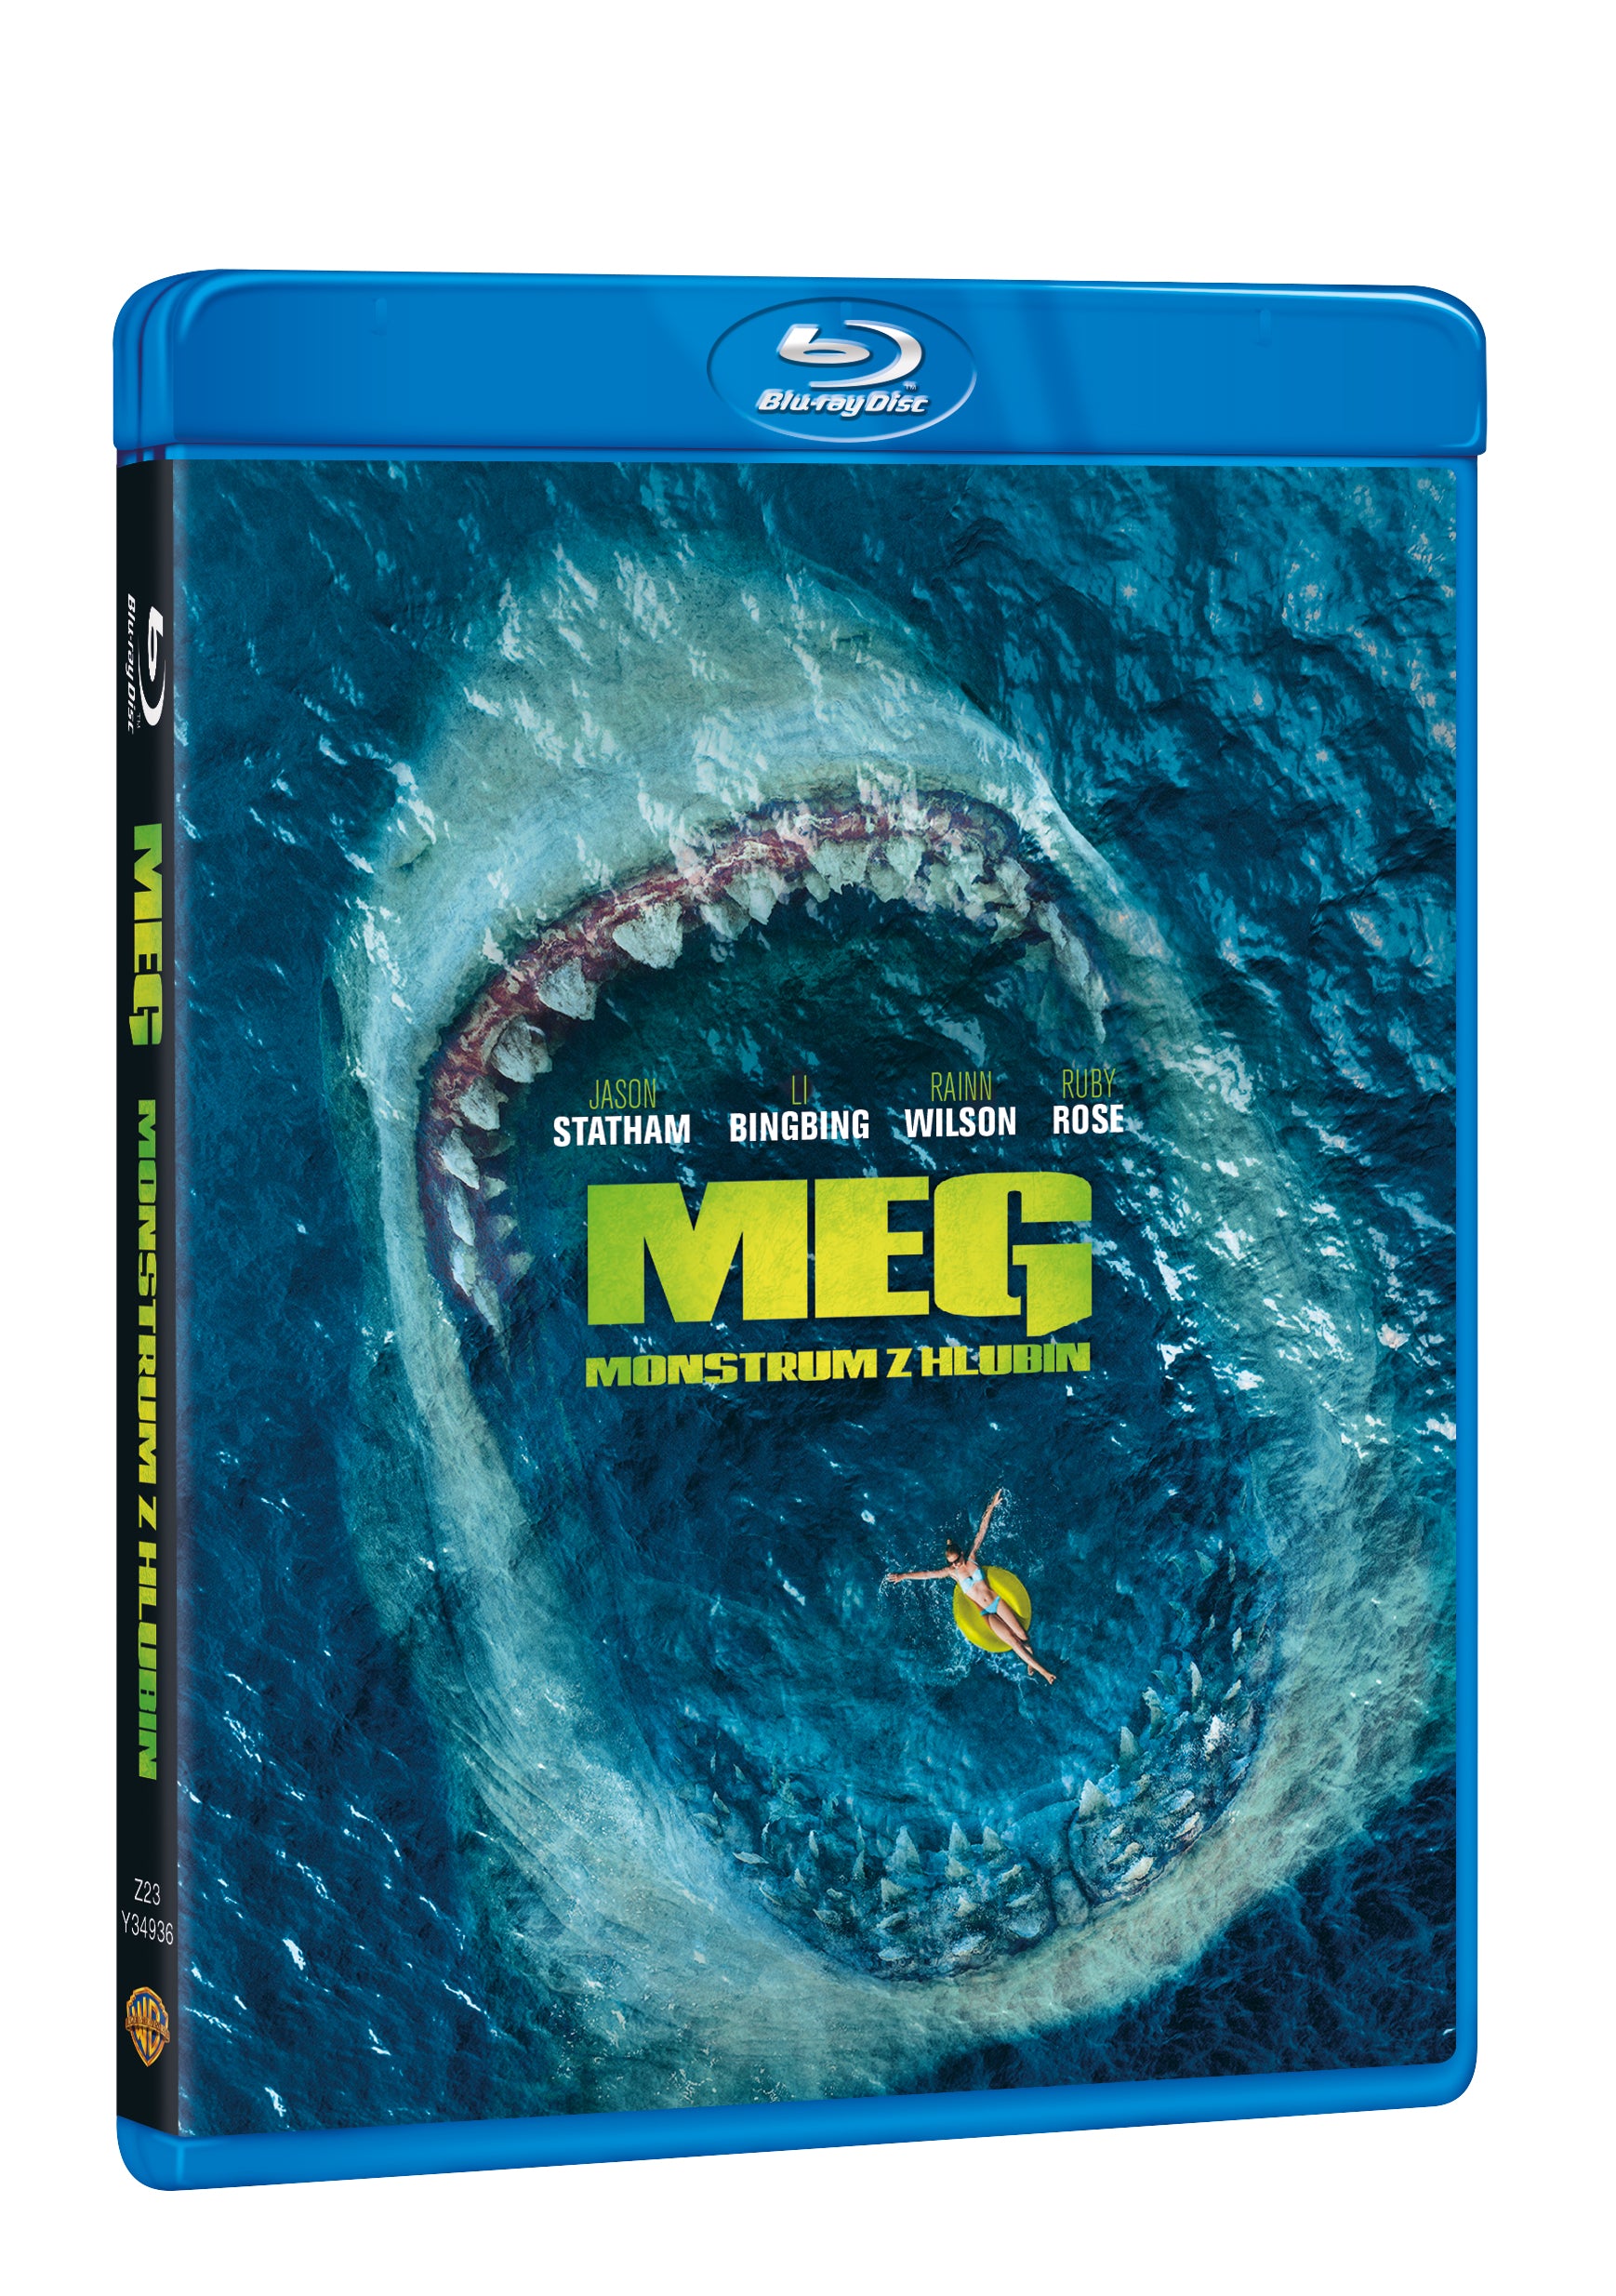 Meg: Monstrum z hlubin BD / Meg - Czech version